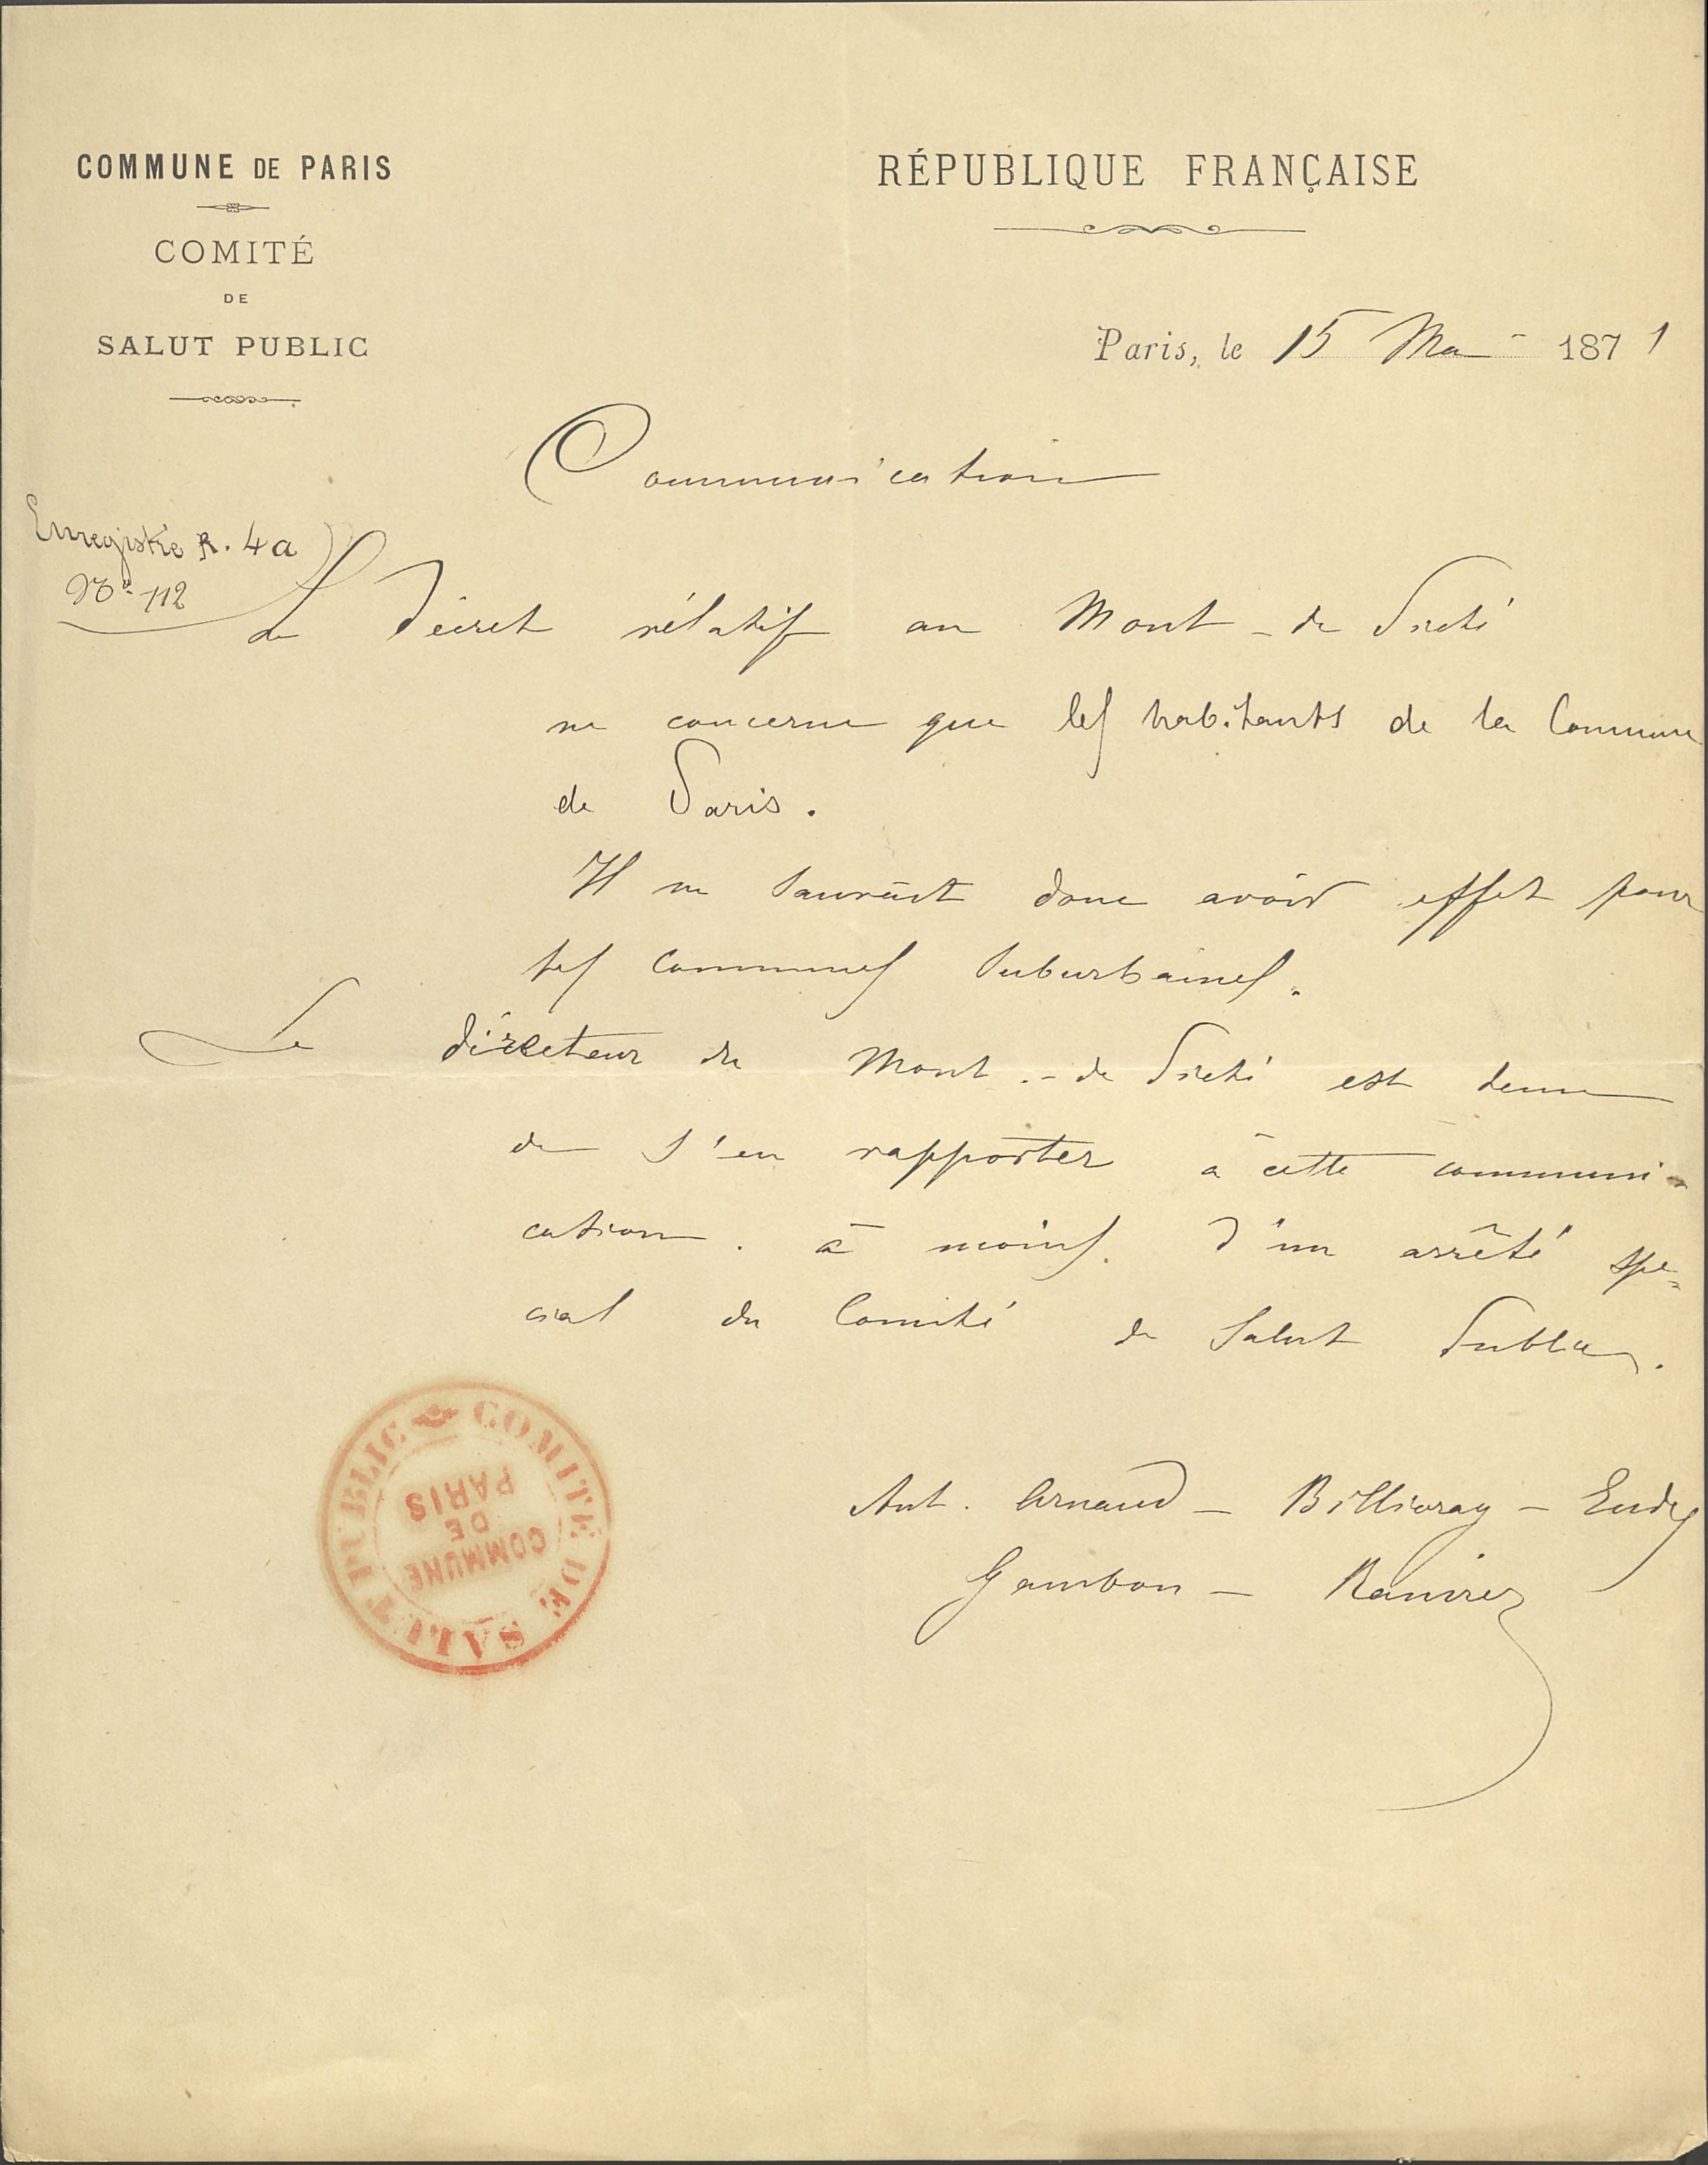 Communication du Comité de salut de public adressée au Mont-de-Piété de Paris, 15 mai 1871. (Archives de Paris, 1ETP 605.)